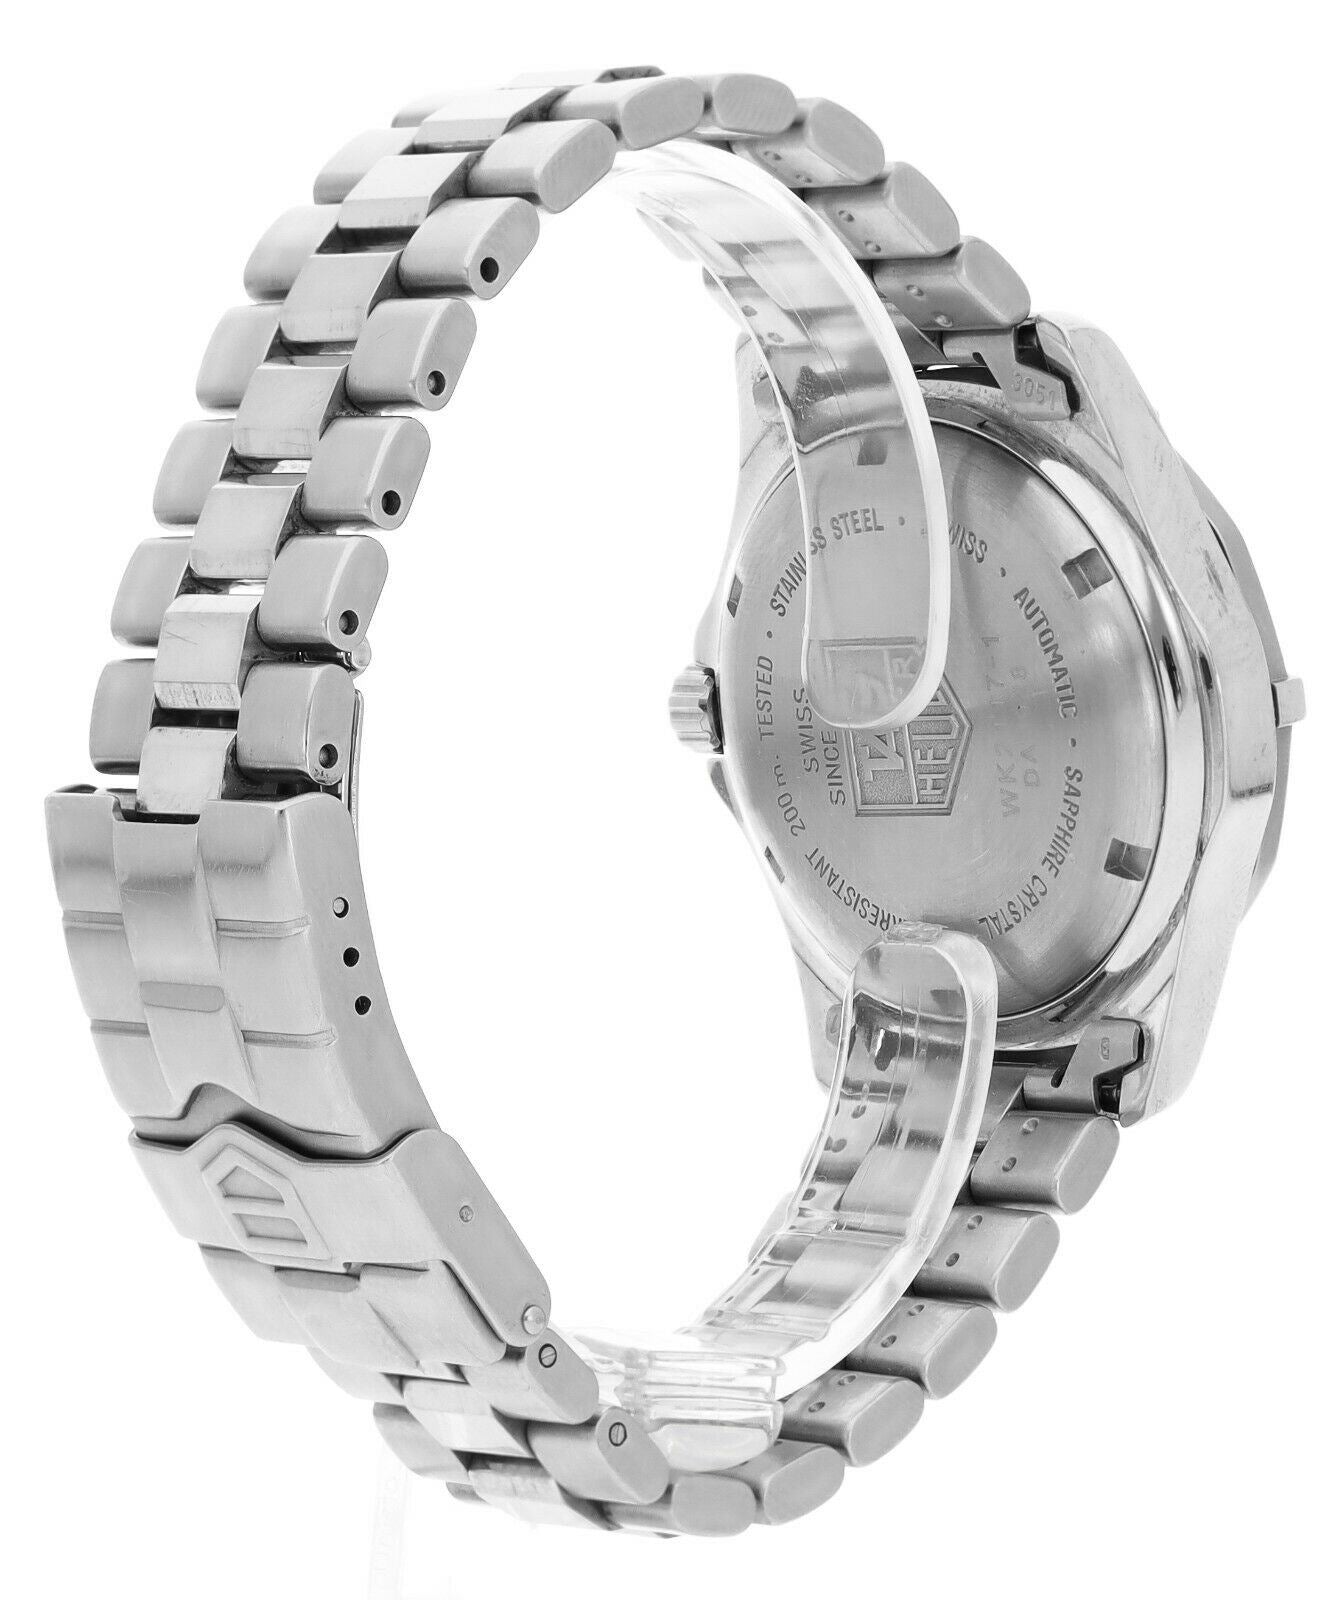 タグホイヤー メンズ腕時計WK2117 クラシック オートマチック 200m